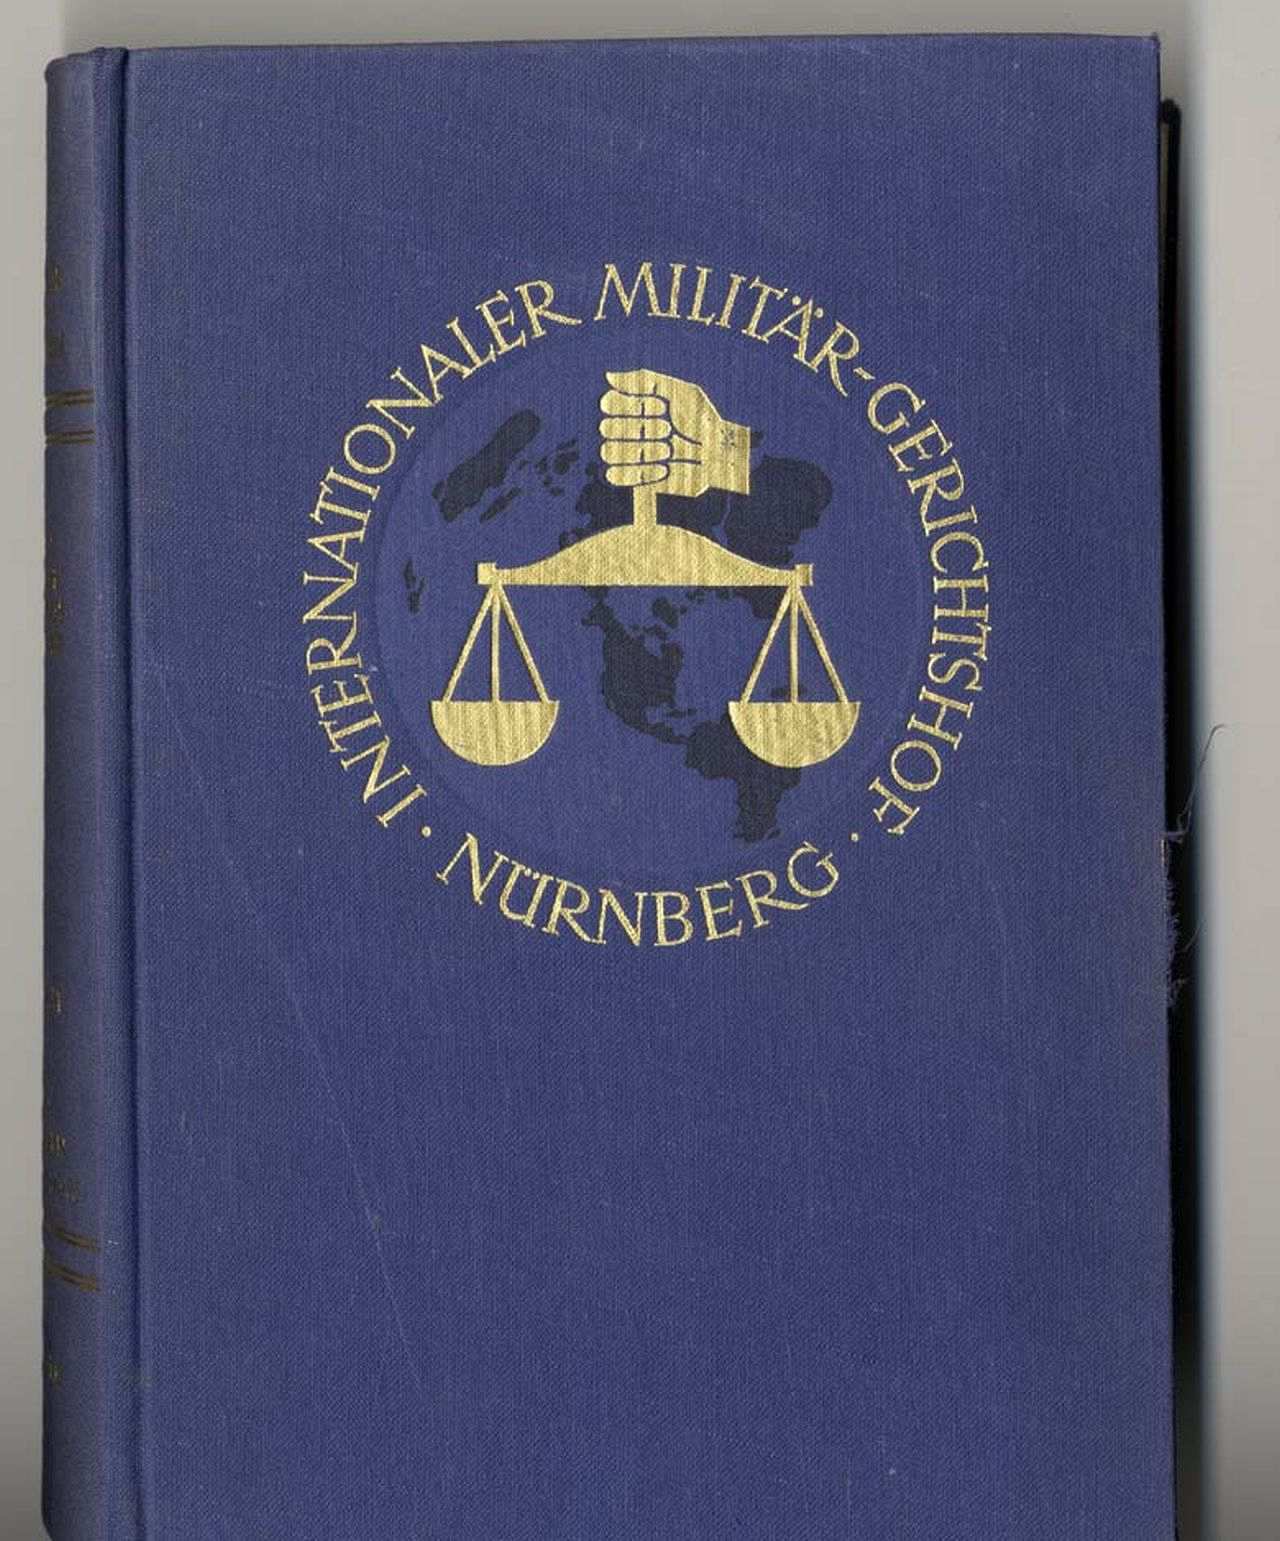 Bild der Prozessakten der Nürnberger Prozesse